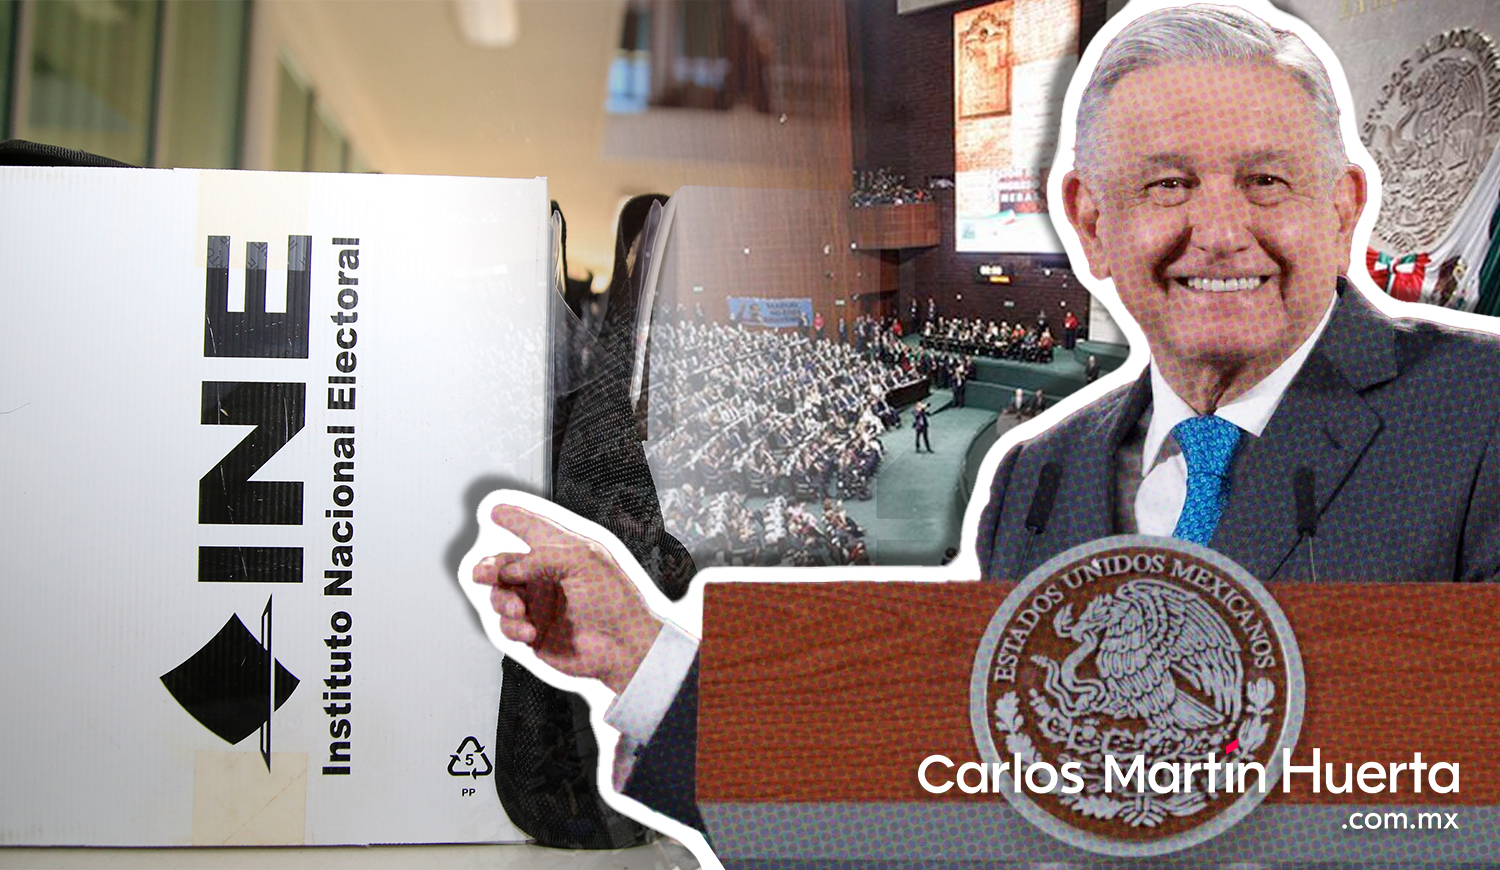 Abierta a debate la Reforma Electoral indica López Obrador